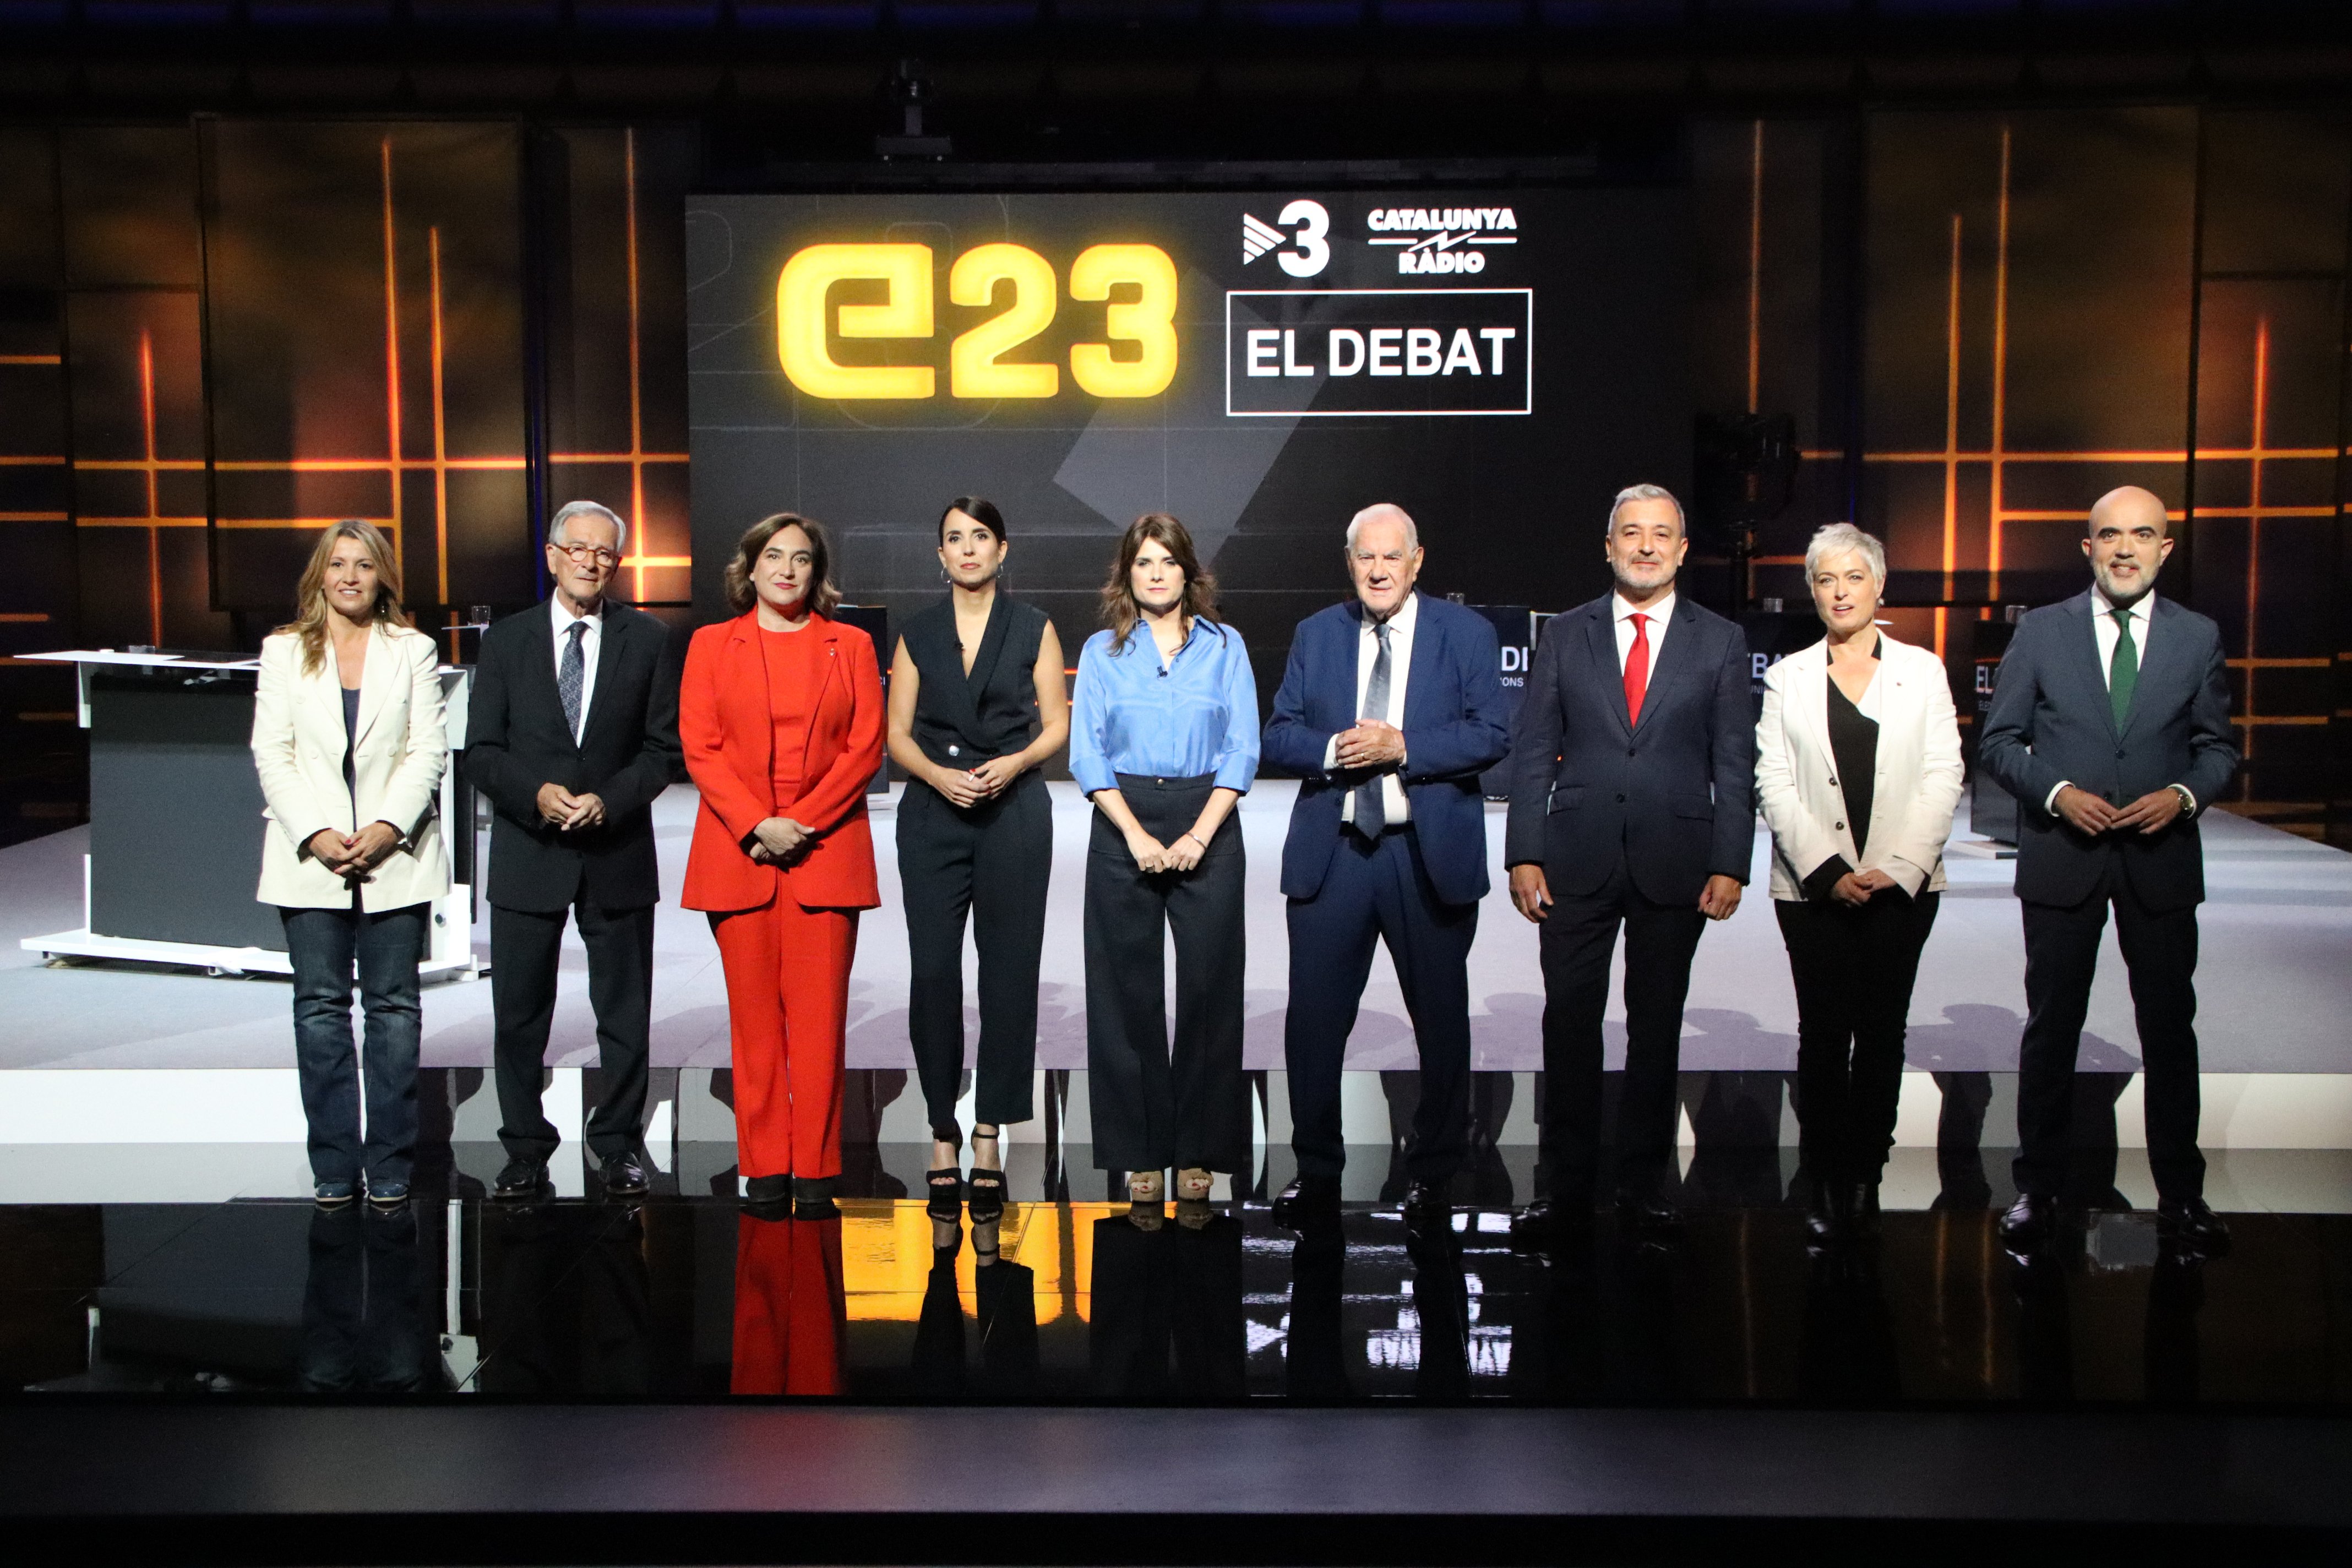 Piques y engaños: Las 10 verificaciones del debate electoral de Barcelona en TV3